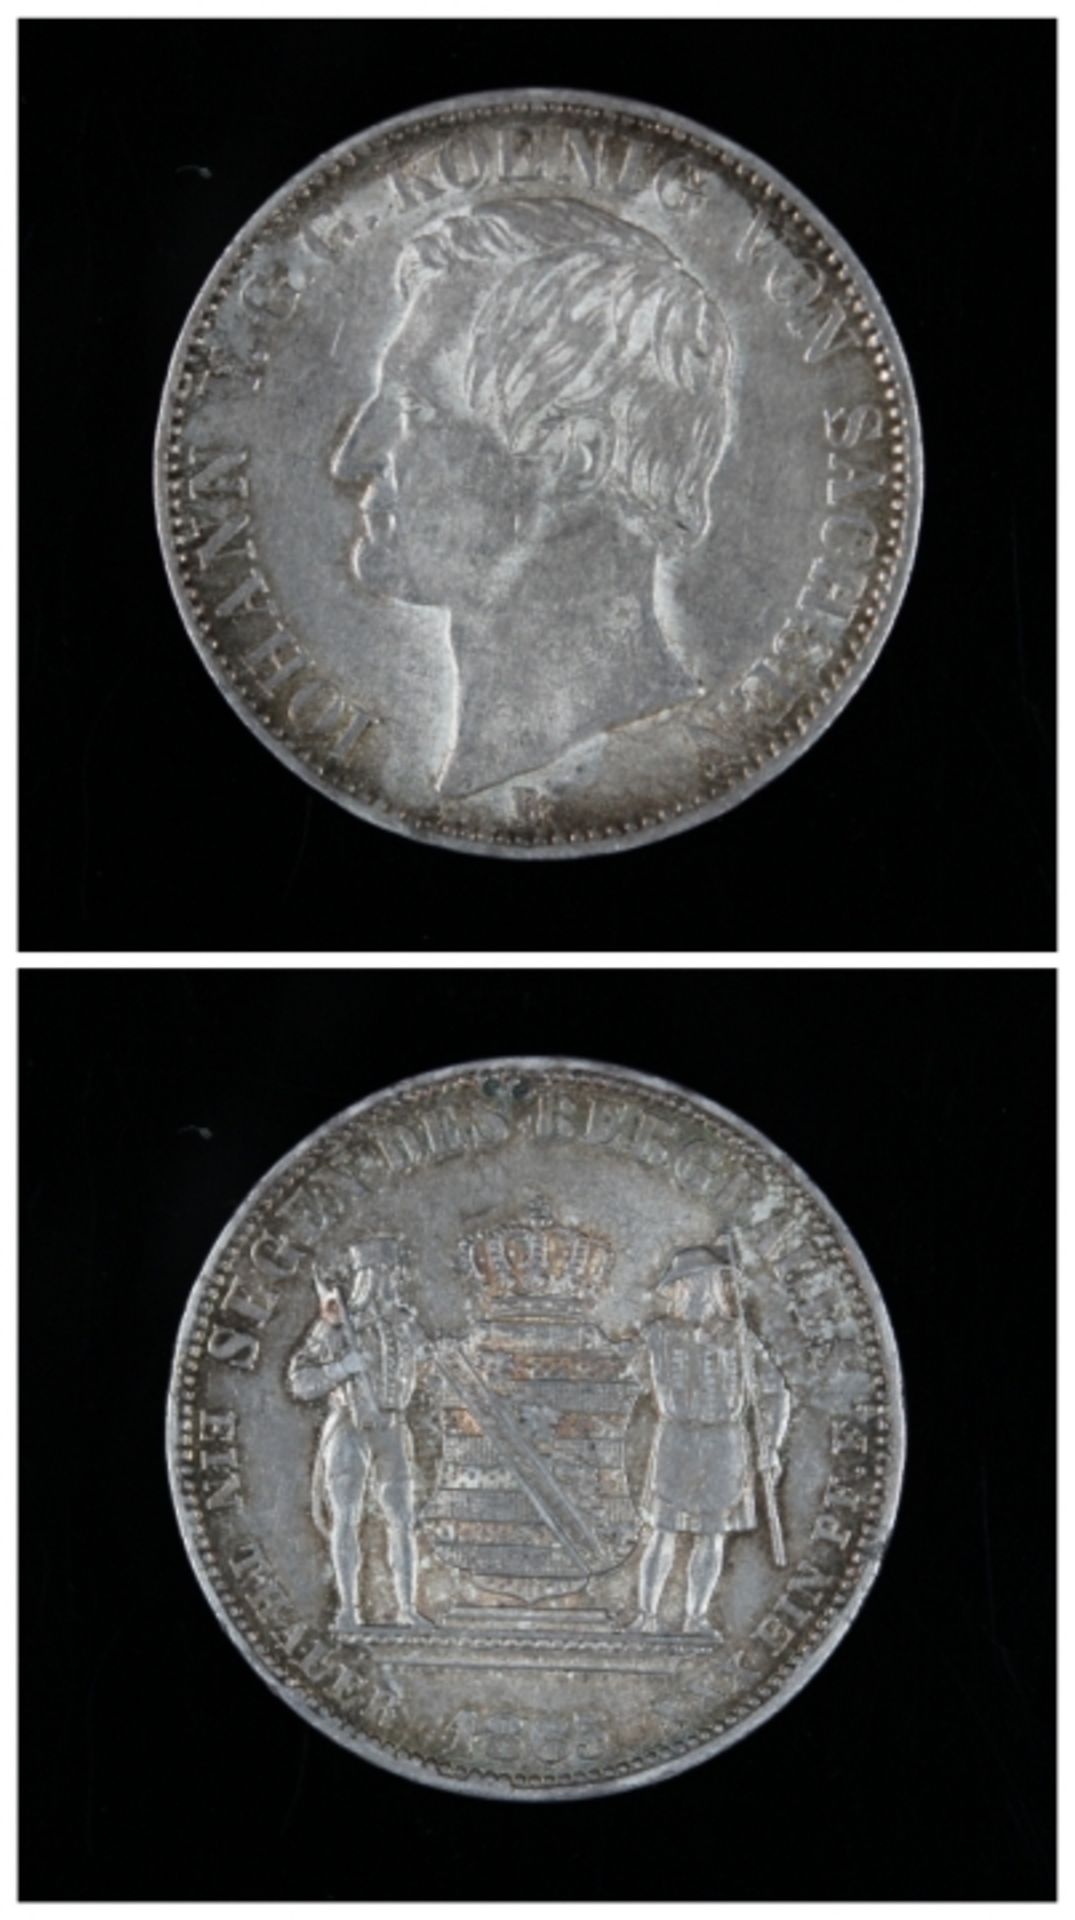 Ein Thaler - Sachsen 1865 Segen des Bergbauens, Silber, Wappen, Rs: Johann V König von Sachsen, Kopf